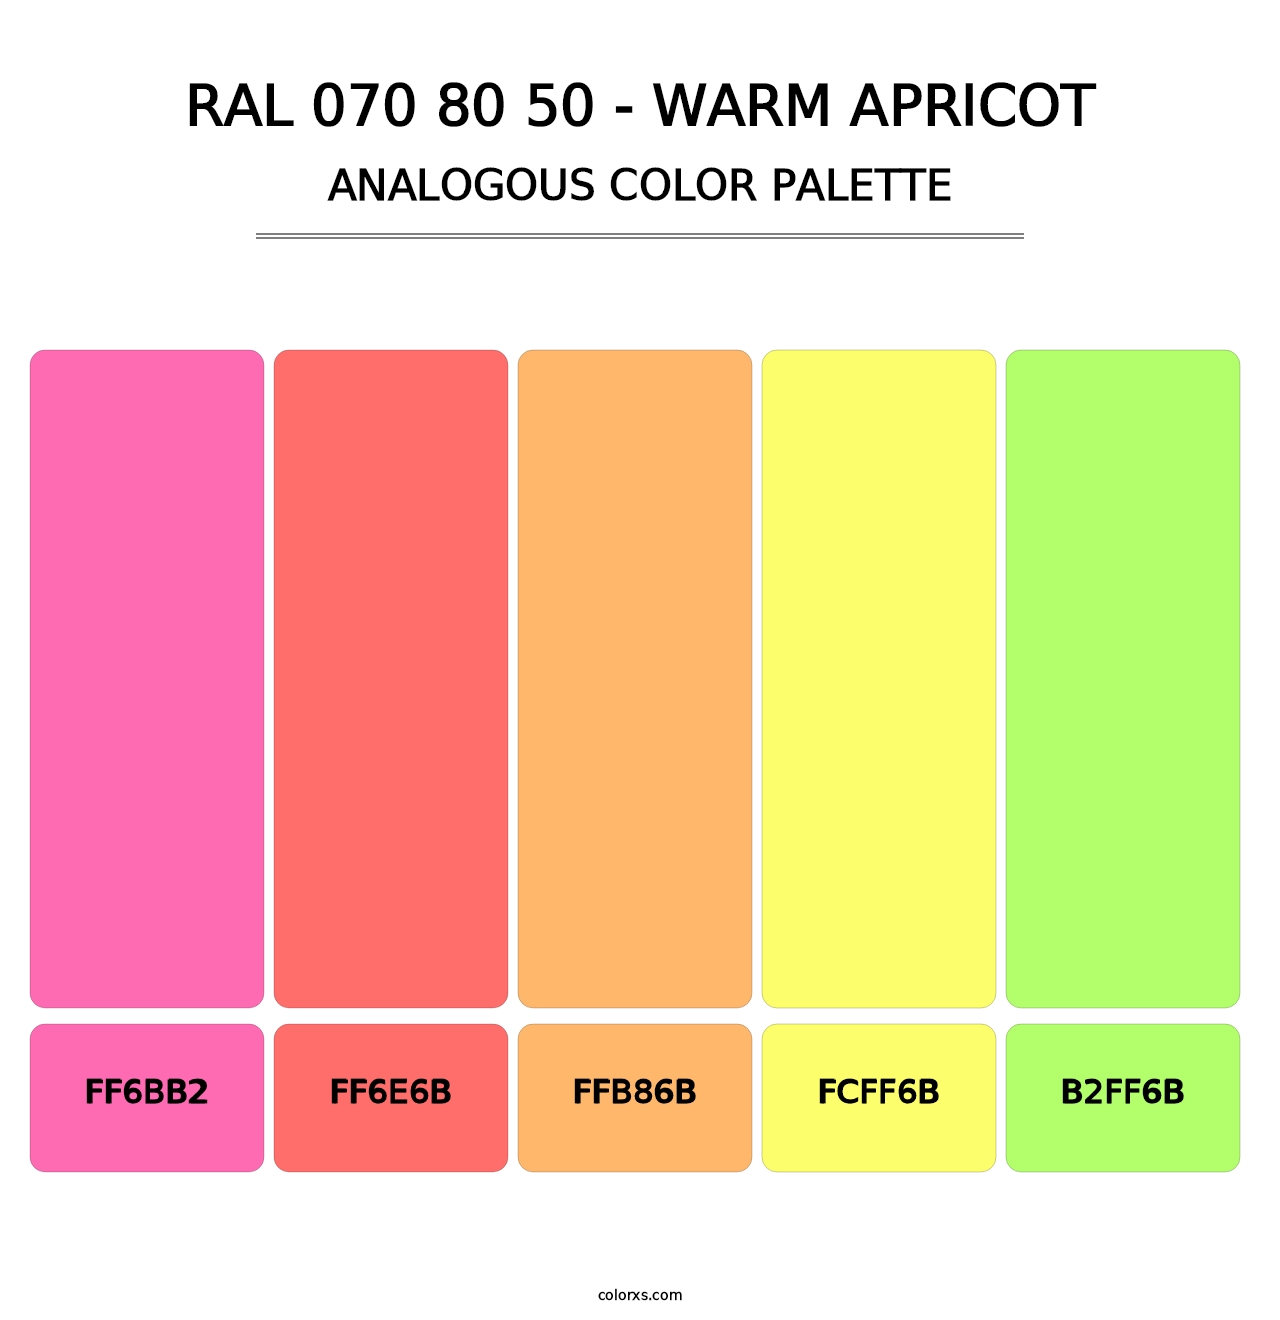 RAL 070 80 50 - Warm Apricot - Analogous Color Palette